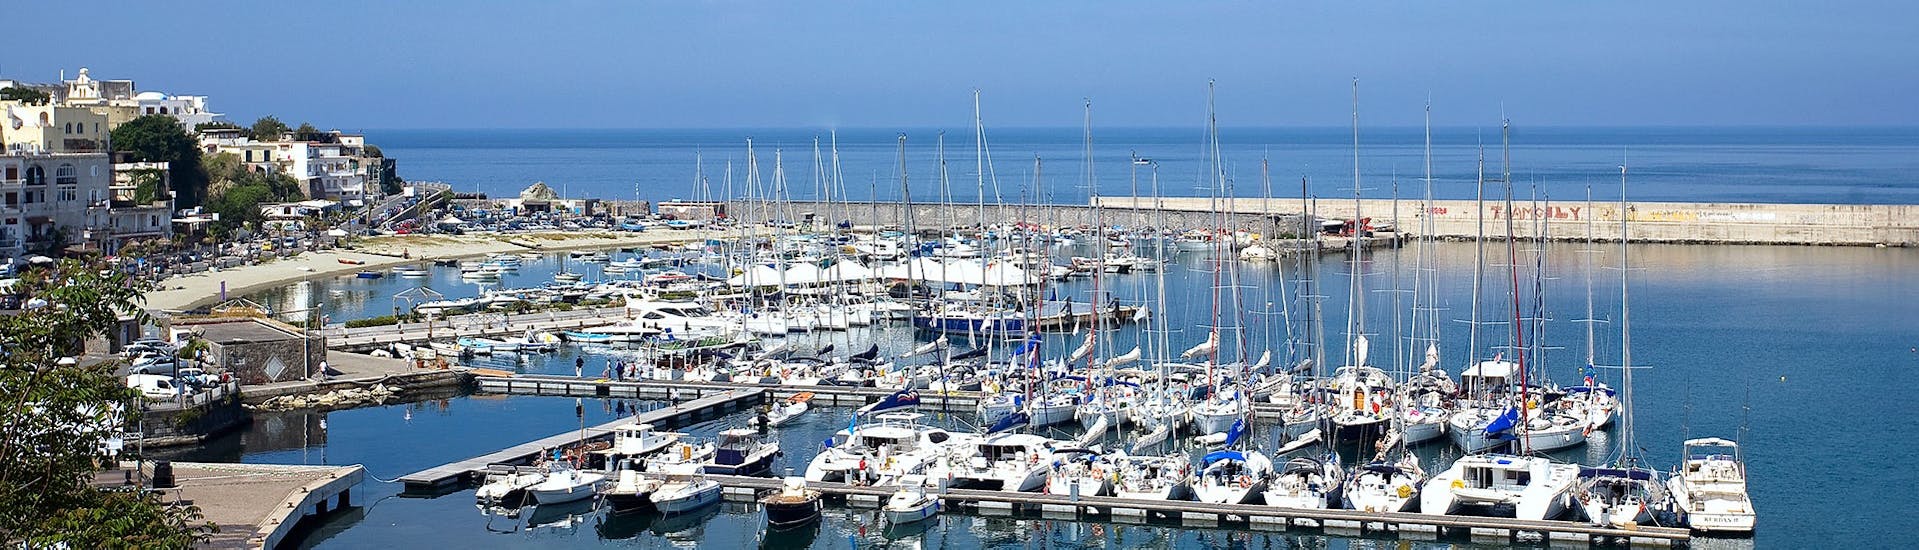 Il porto di Forio, che vedremo durante la Gita in barca intorno ad Ischia con soste per nuotare e pranzo con Alcione Boat.